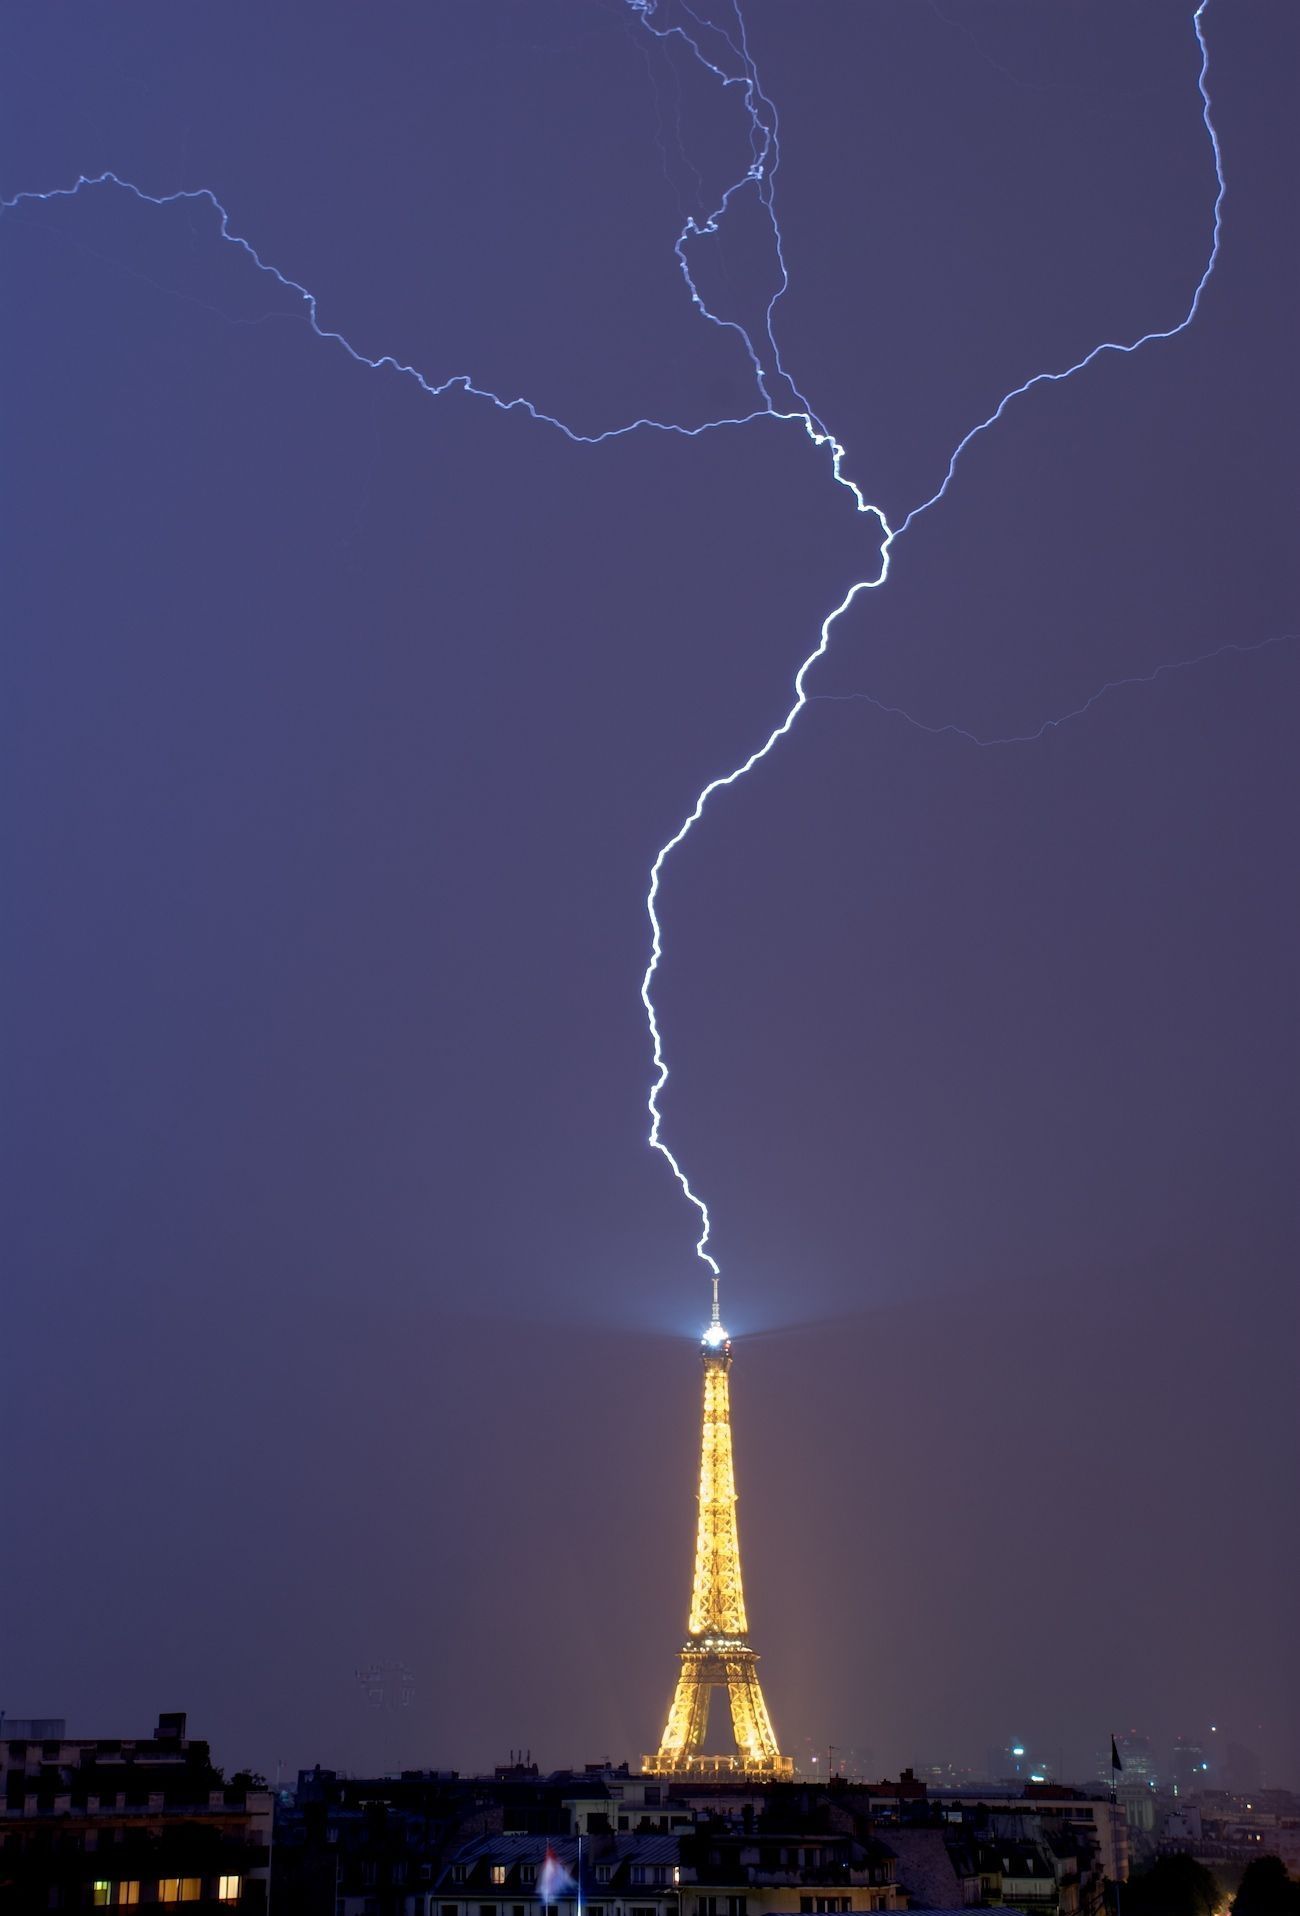 有片！暴風雨來襲巴黎鐵塔遭雷劈中- 澳門力報官網